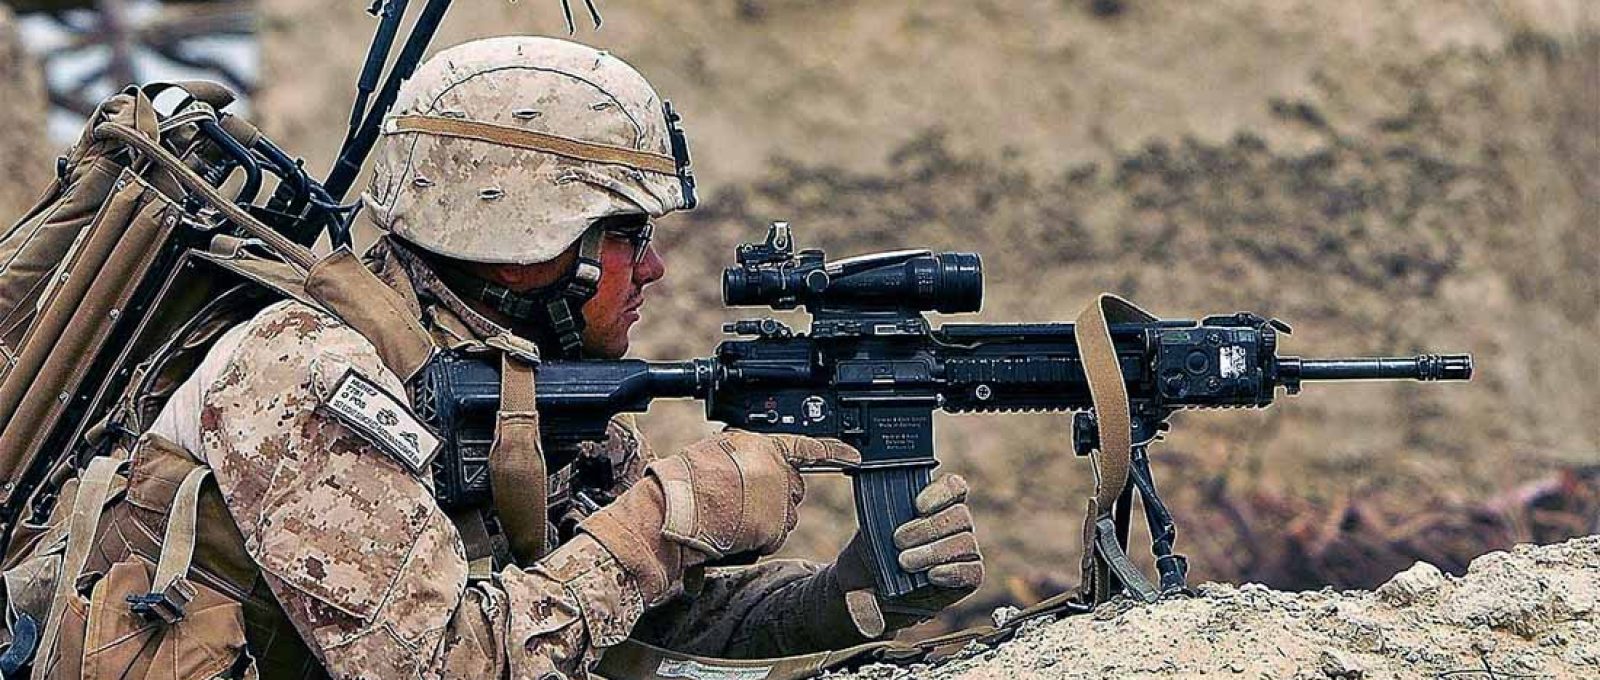 Fuzileiro americano faz segurança durante patrulha no Afeganistão, 22 de março de 2012 (Alfred V. Lopez/USAF).